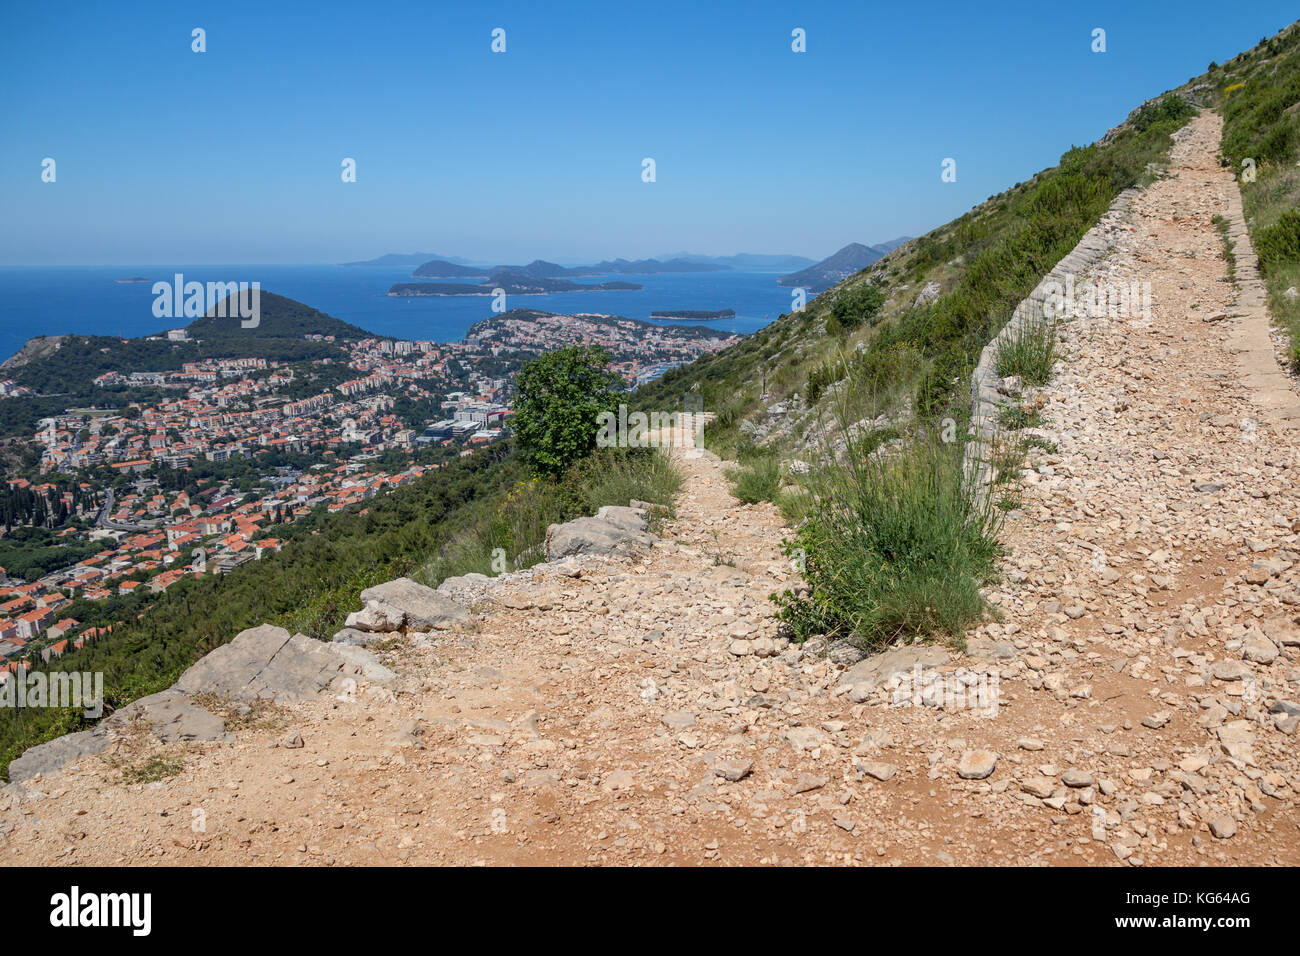 Bien definido de camino que conduce a la cima del monte srd zig-zags la ladera arriba, ofreciendo vistas panorámicas de Dubrovnik, Lapad, el Adriático y islas croatas Foto de stock